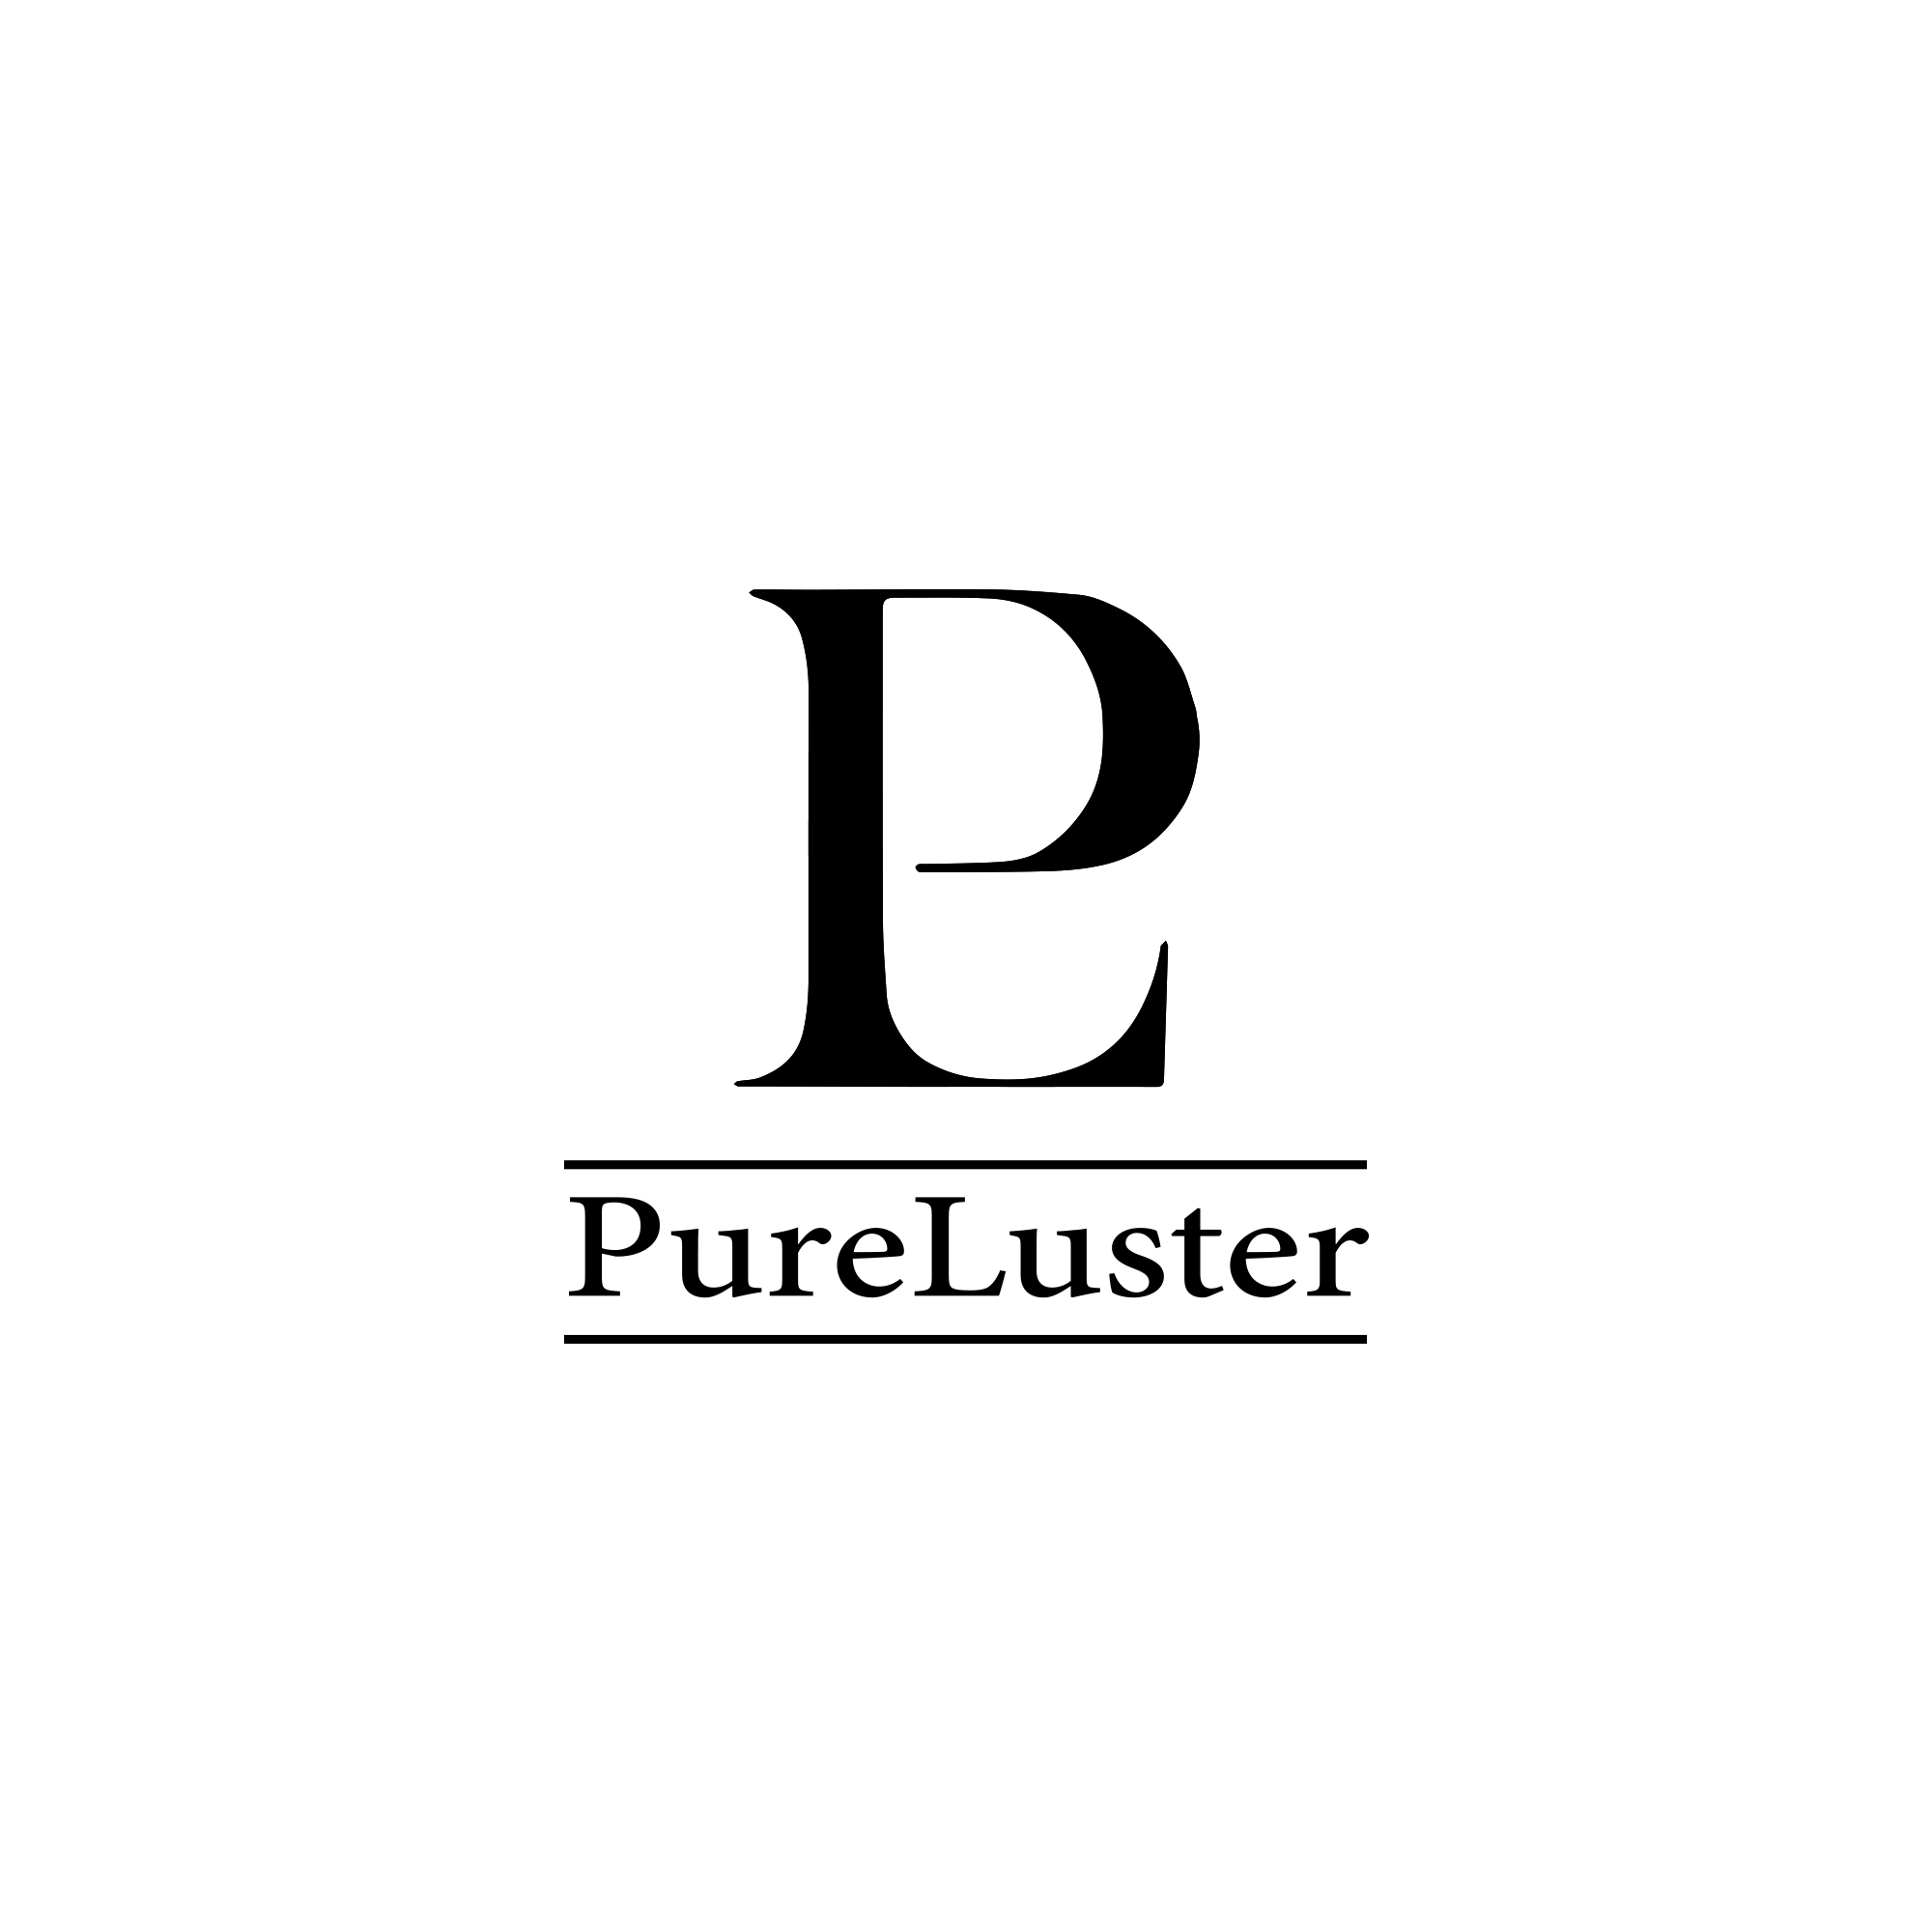 PureLuster